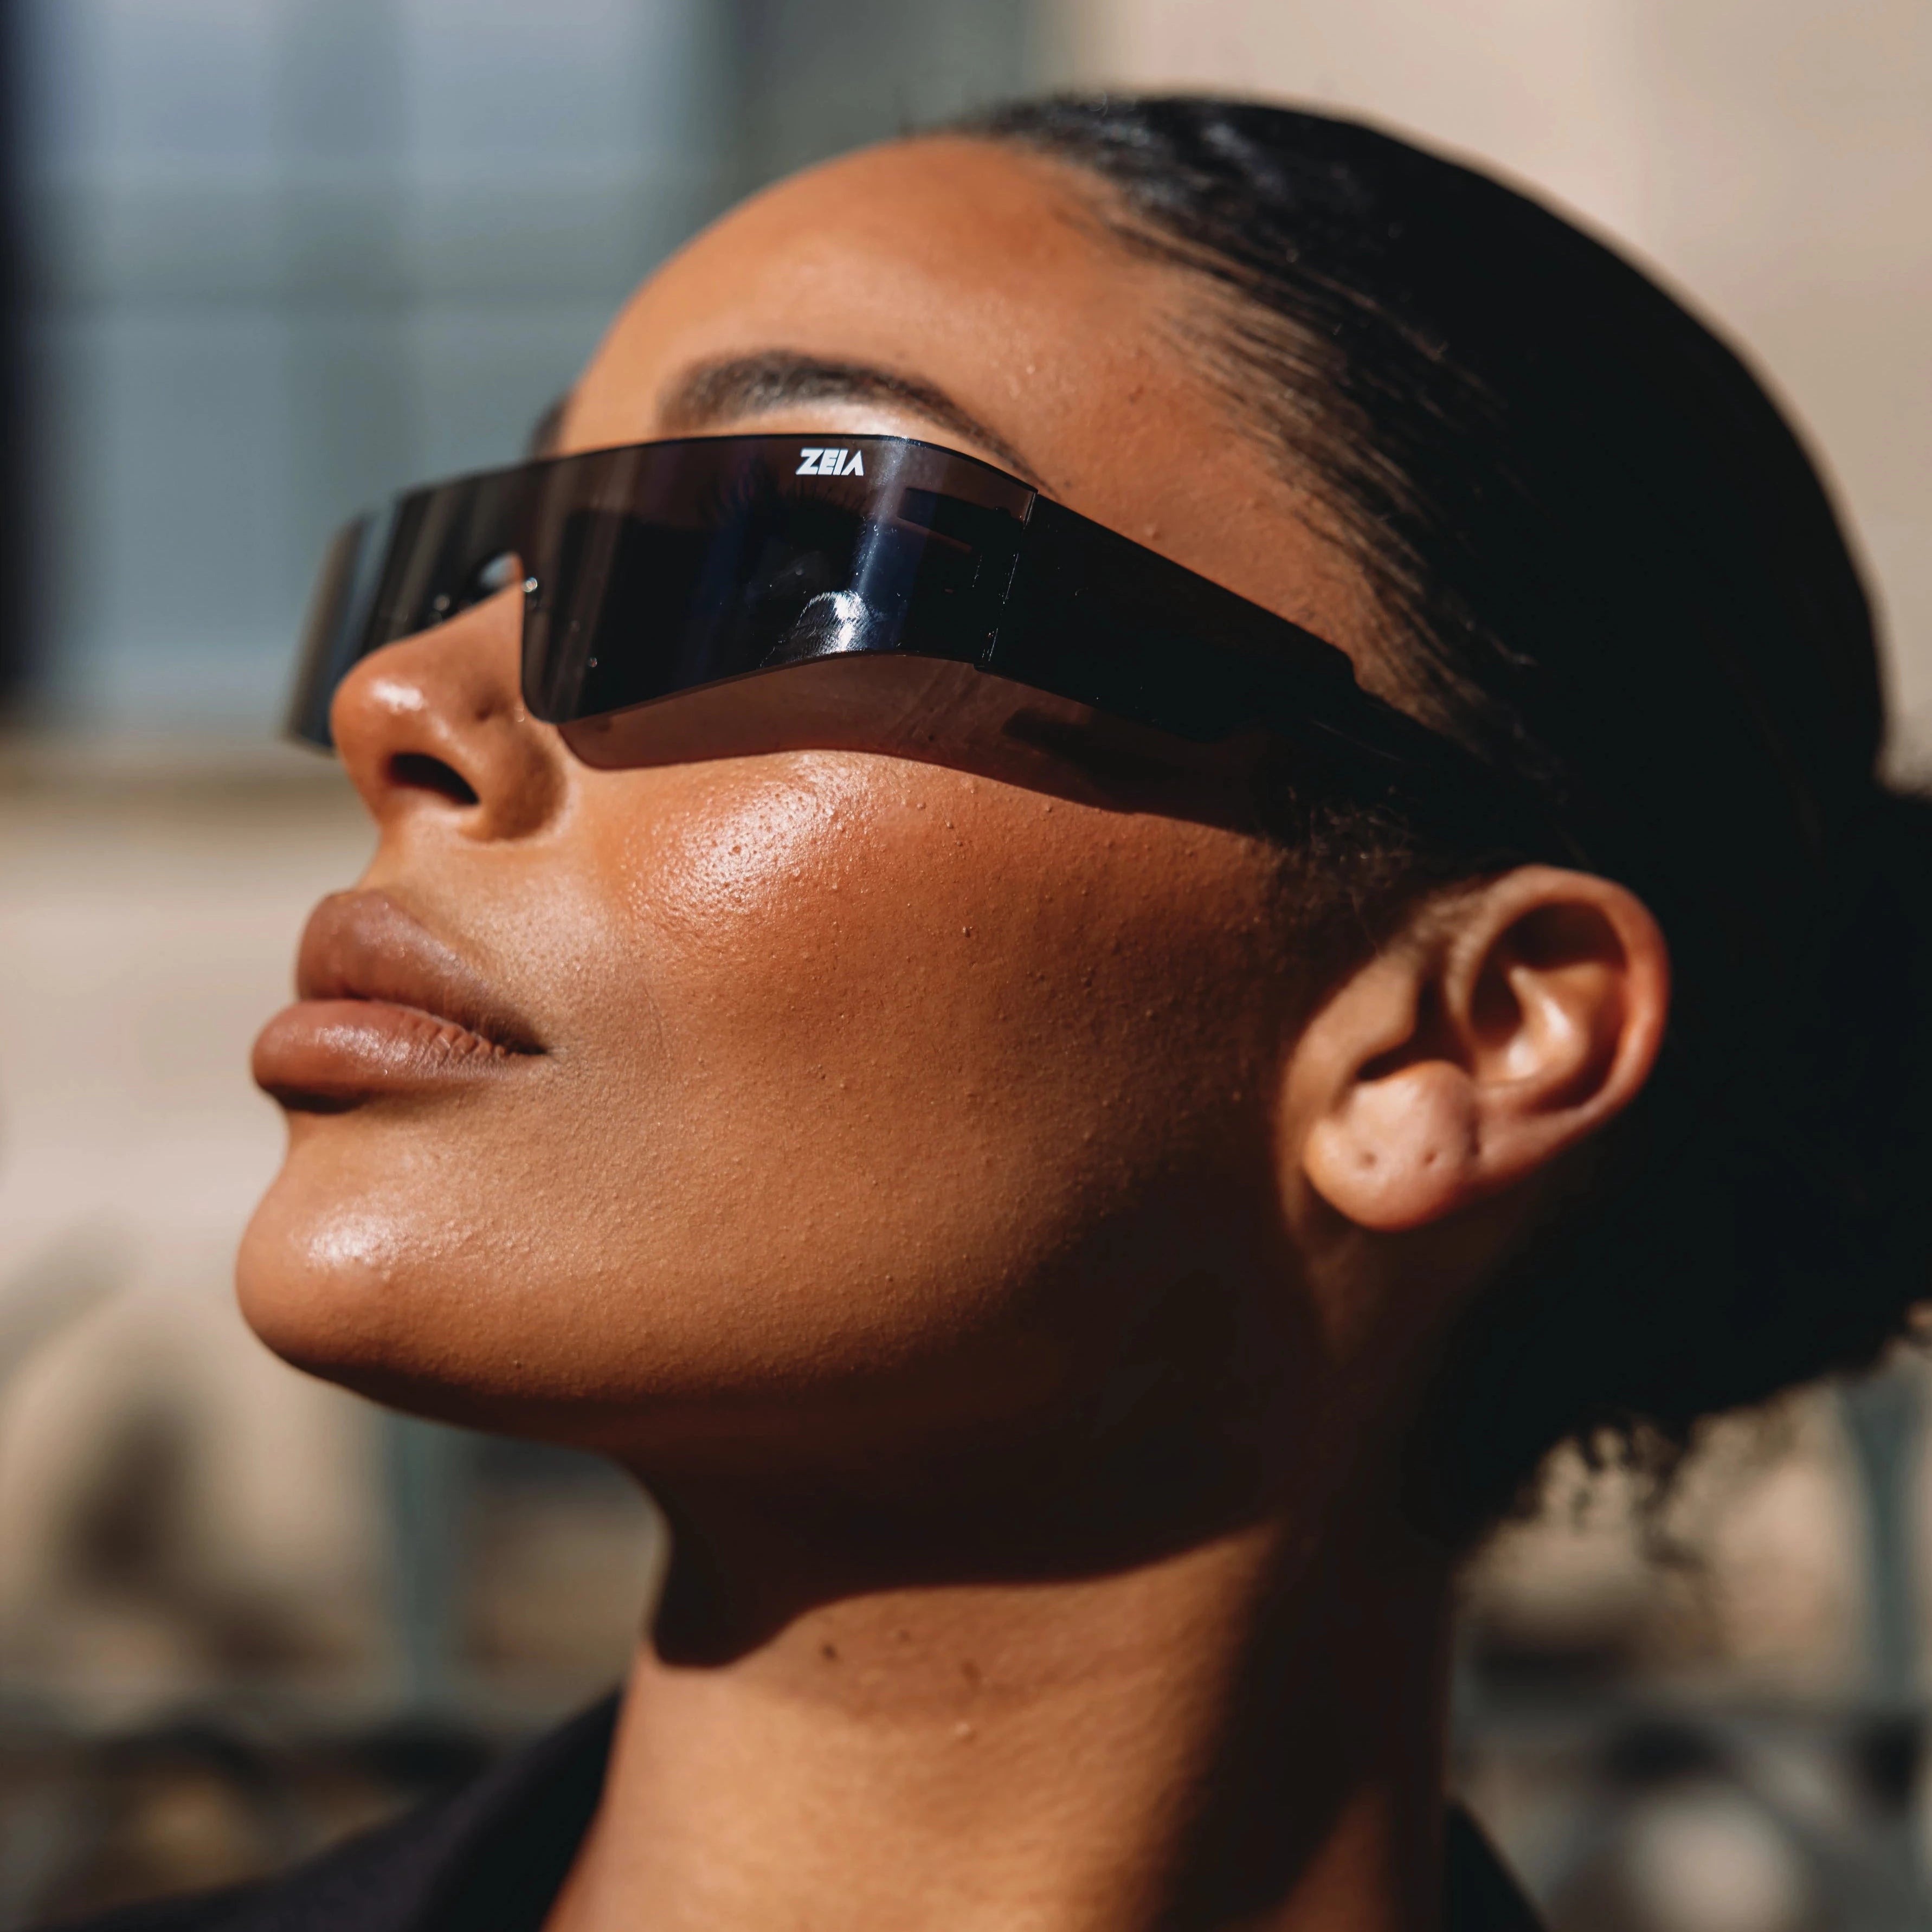 Kim Sunglasses in black - Celebrity glasses - Zeia 